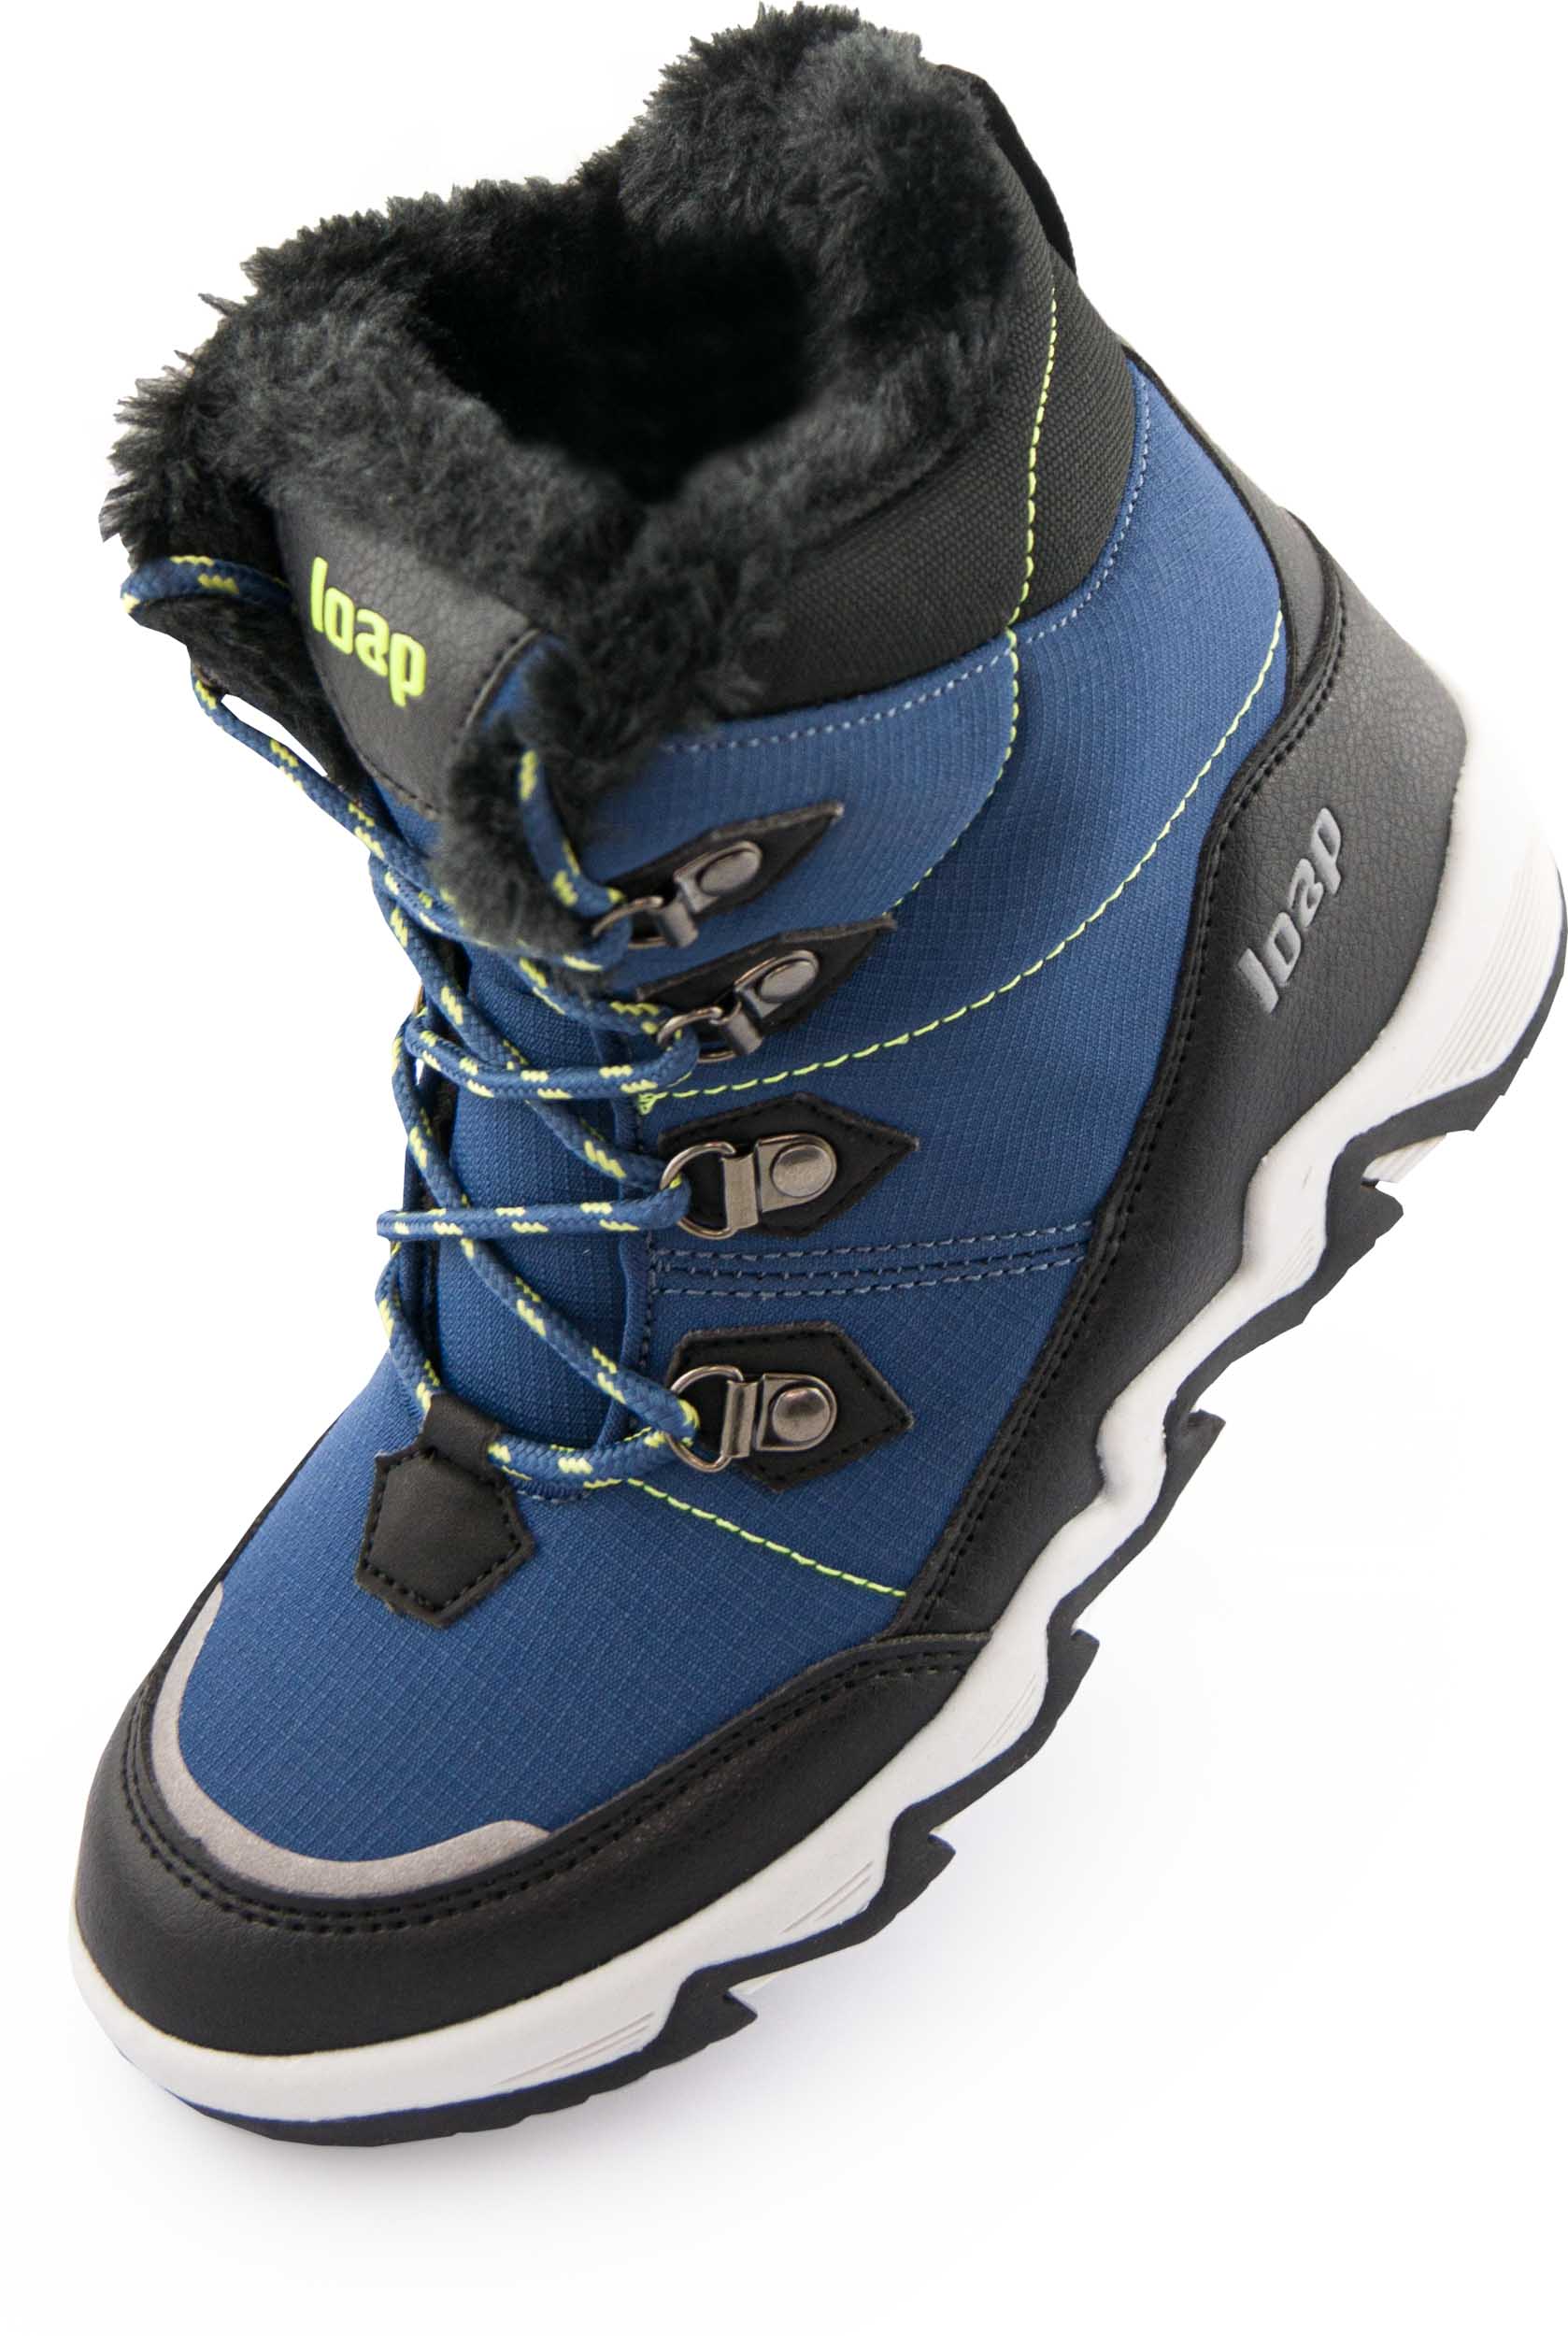 Dětské zimní boty LOAP LIMA blue|29